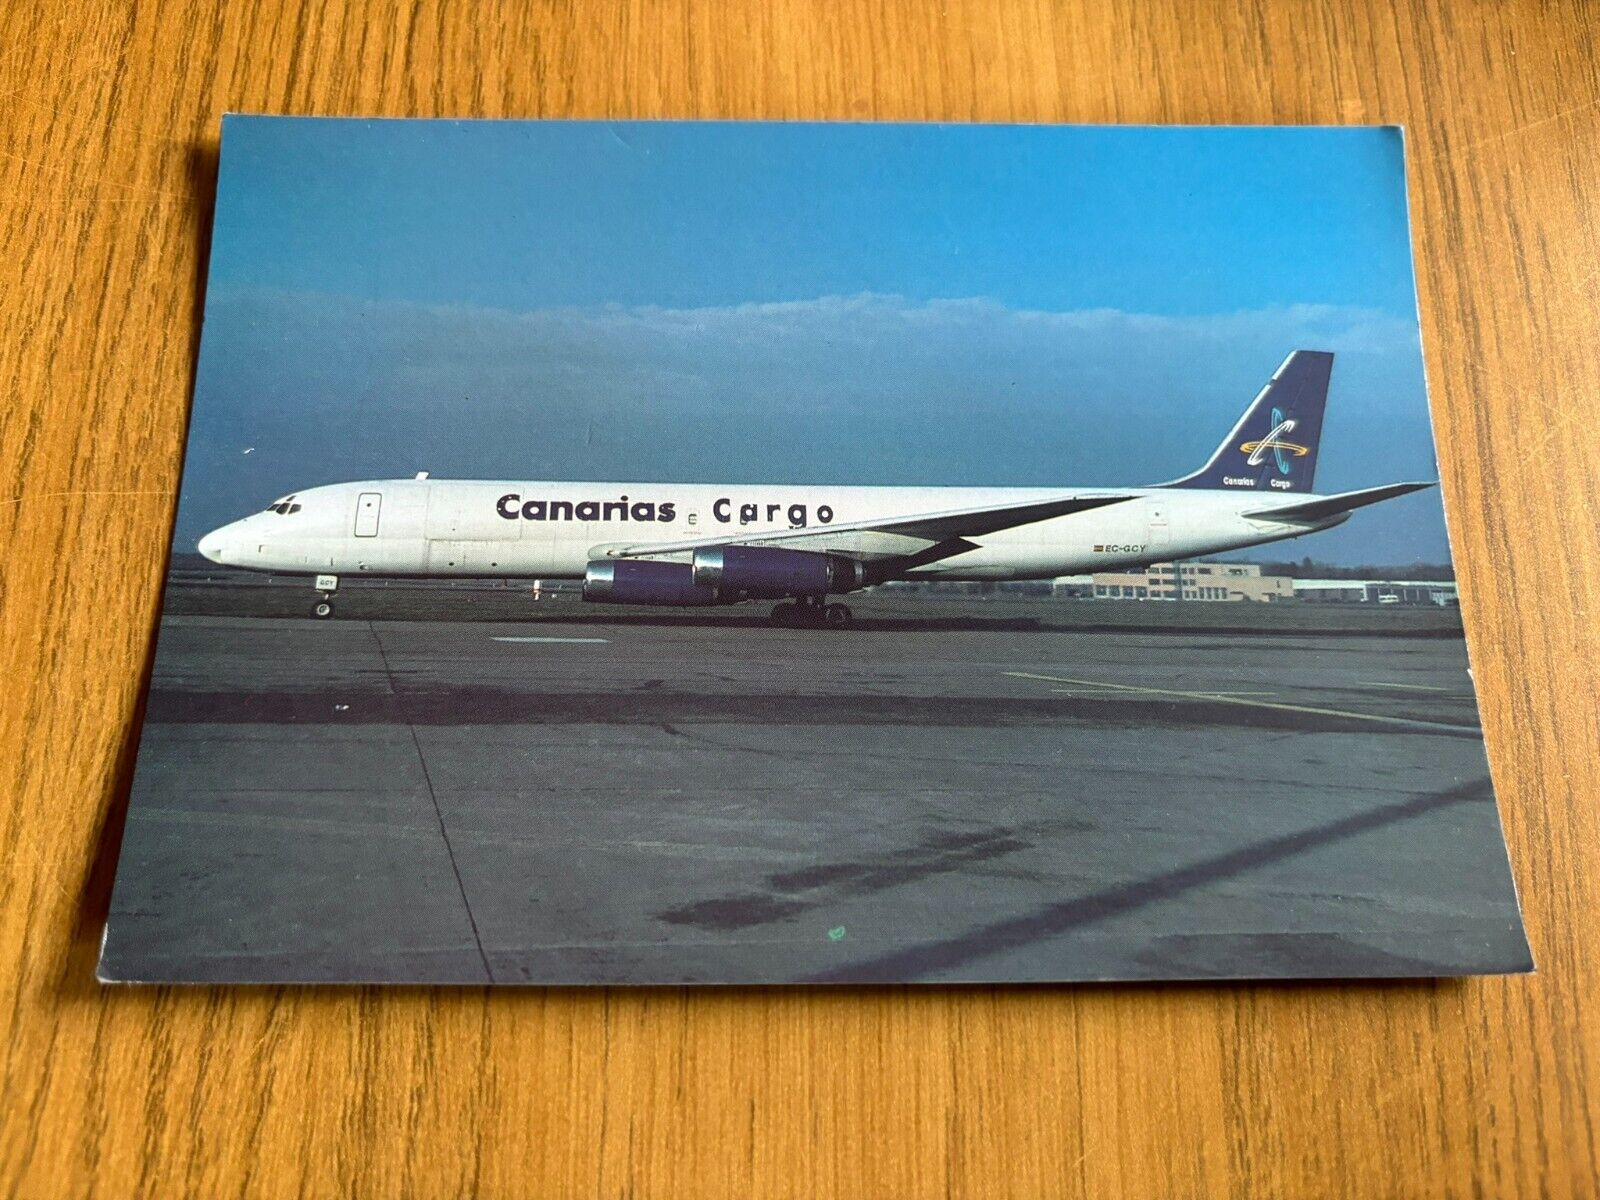 Canarias Cargo Douglas DC-8 aircraft postcard